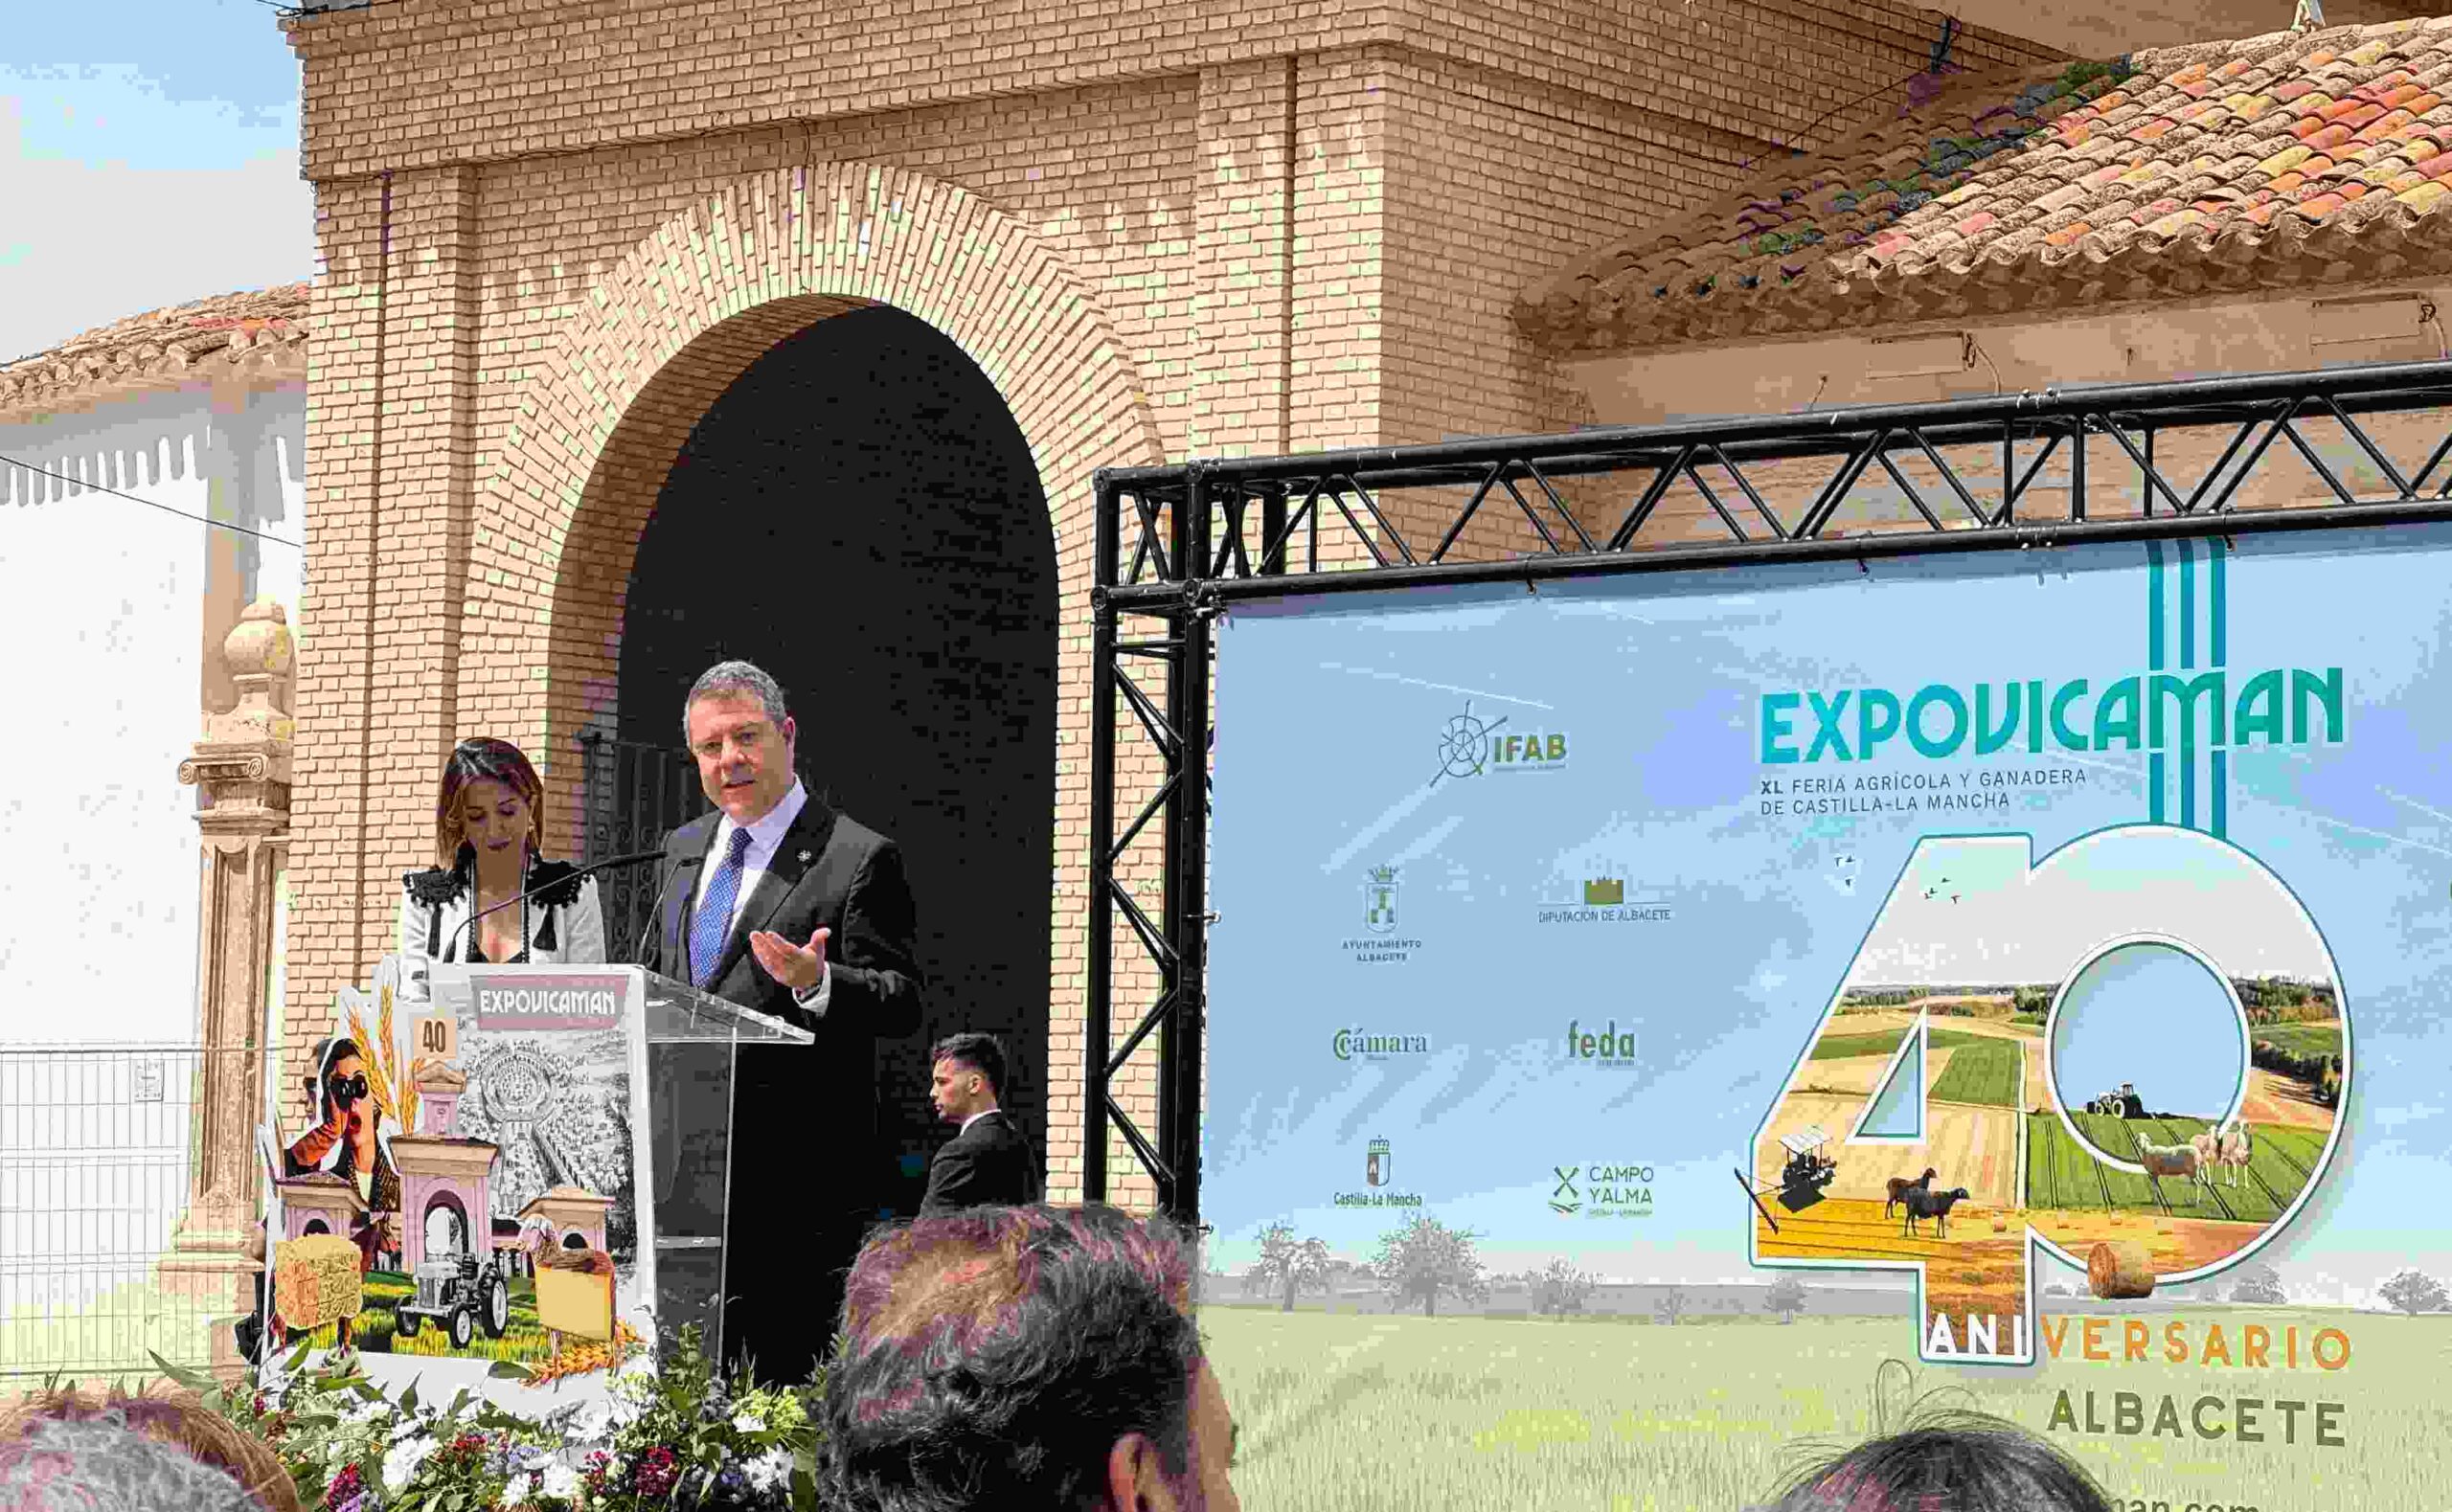 Inauguración de la 40º Expovicaman. Elena Valero